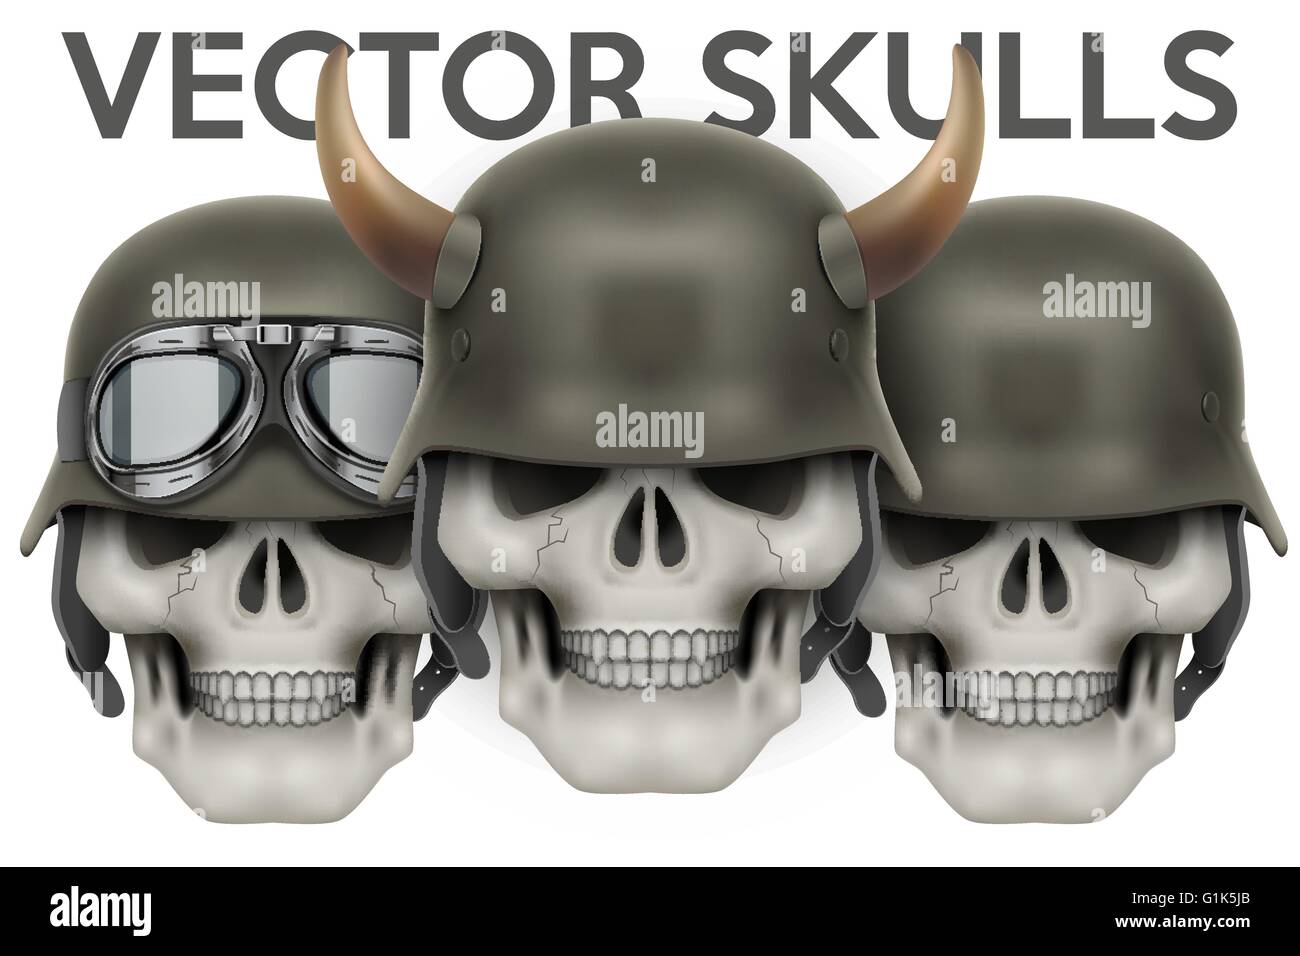 Biker symbols of skulls with helmet and horns Stock Vector